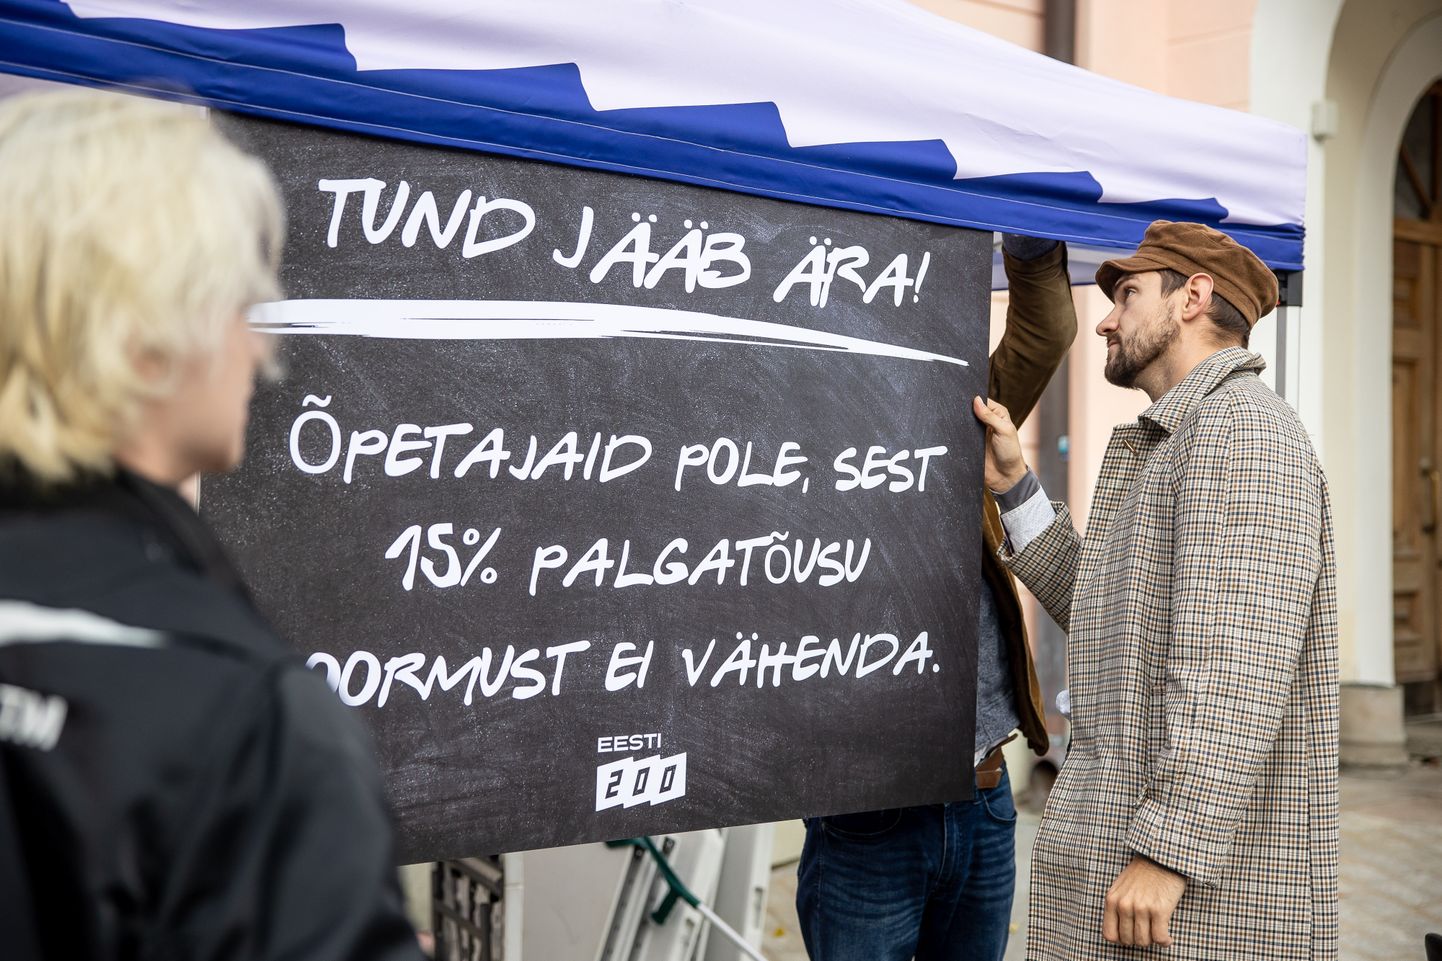 Eesti 200 nõudis möödunud aastal Toompeal õpetajatele veel kõrgemat palka. Uus palganumber sai koalitsioonilepingusse kirja, kuid see ootab veel täitmist. Foto loo juures illustreeriv.